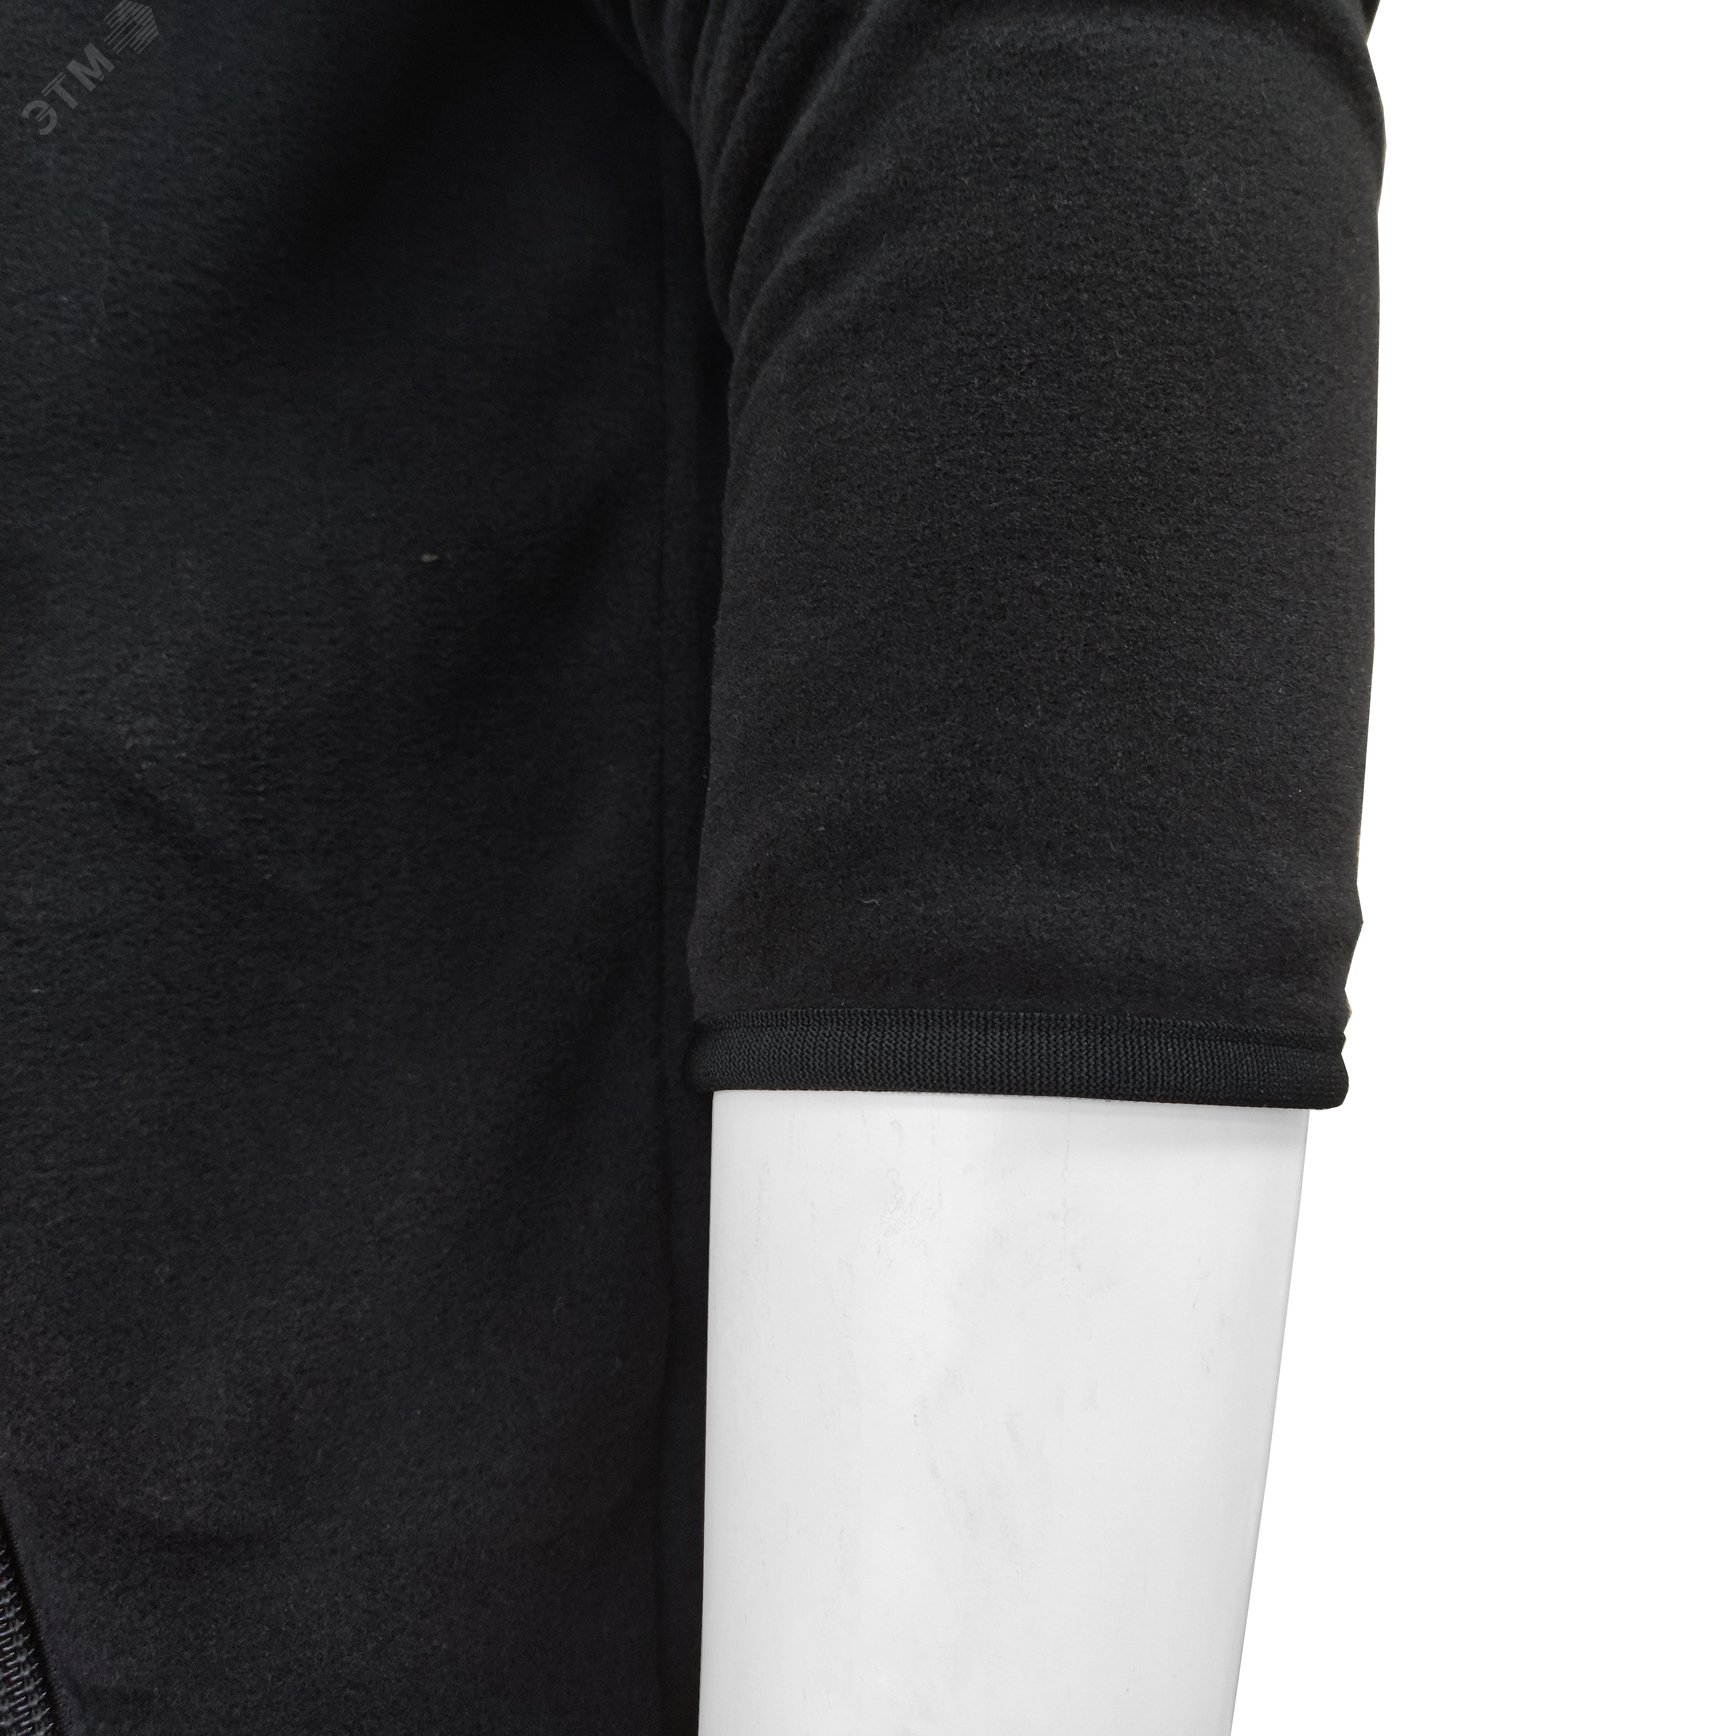 Куртка флисовая арт. JF-01 на молнии цв. чёрный 56-58 р. ХL 142300 Эталон-Спецодежда - превью 10